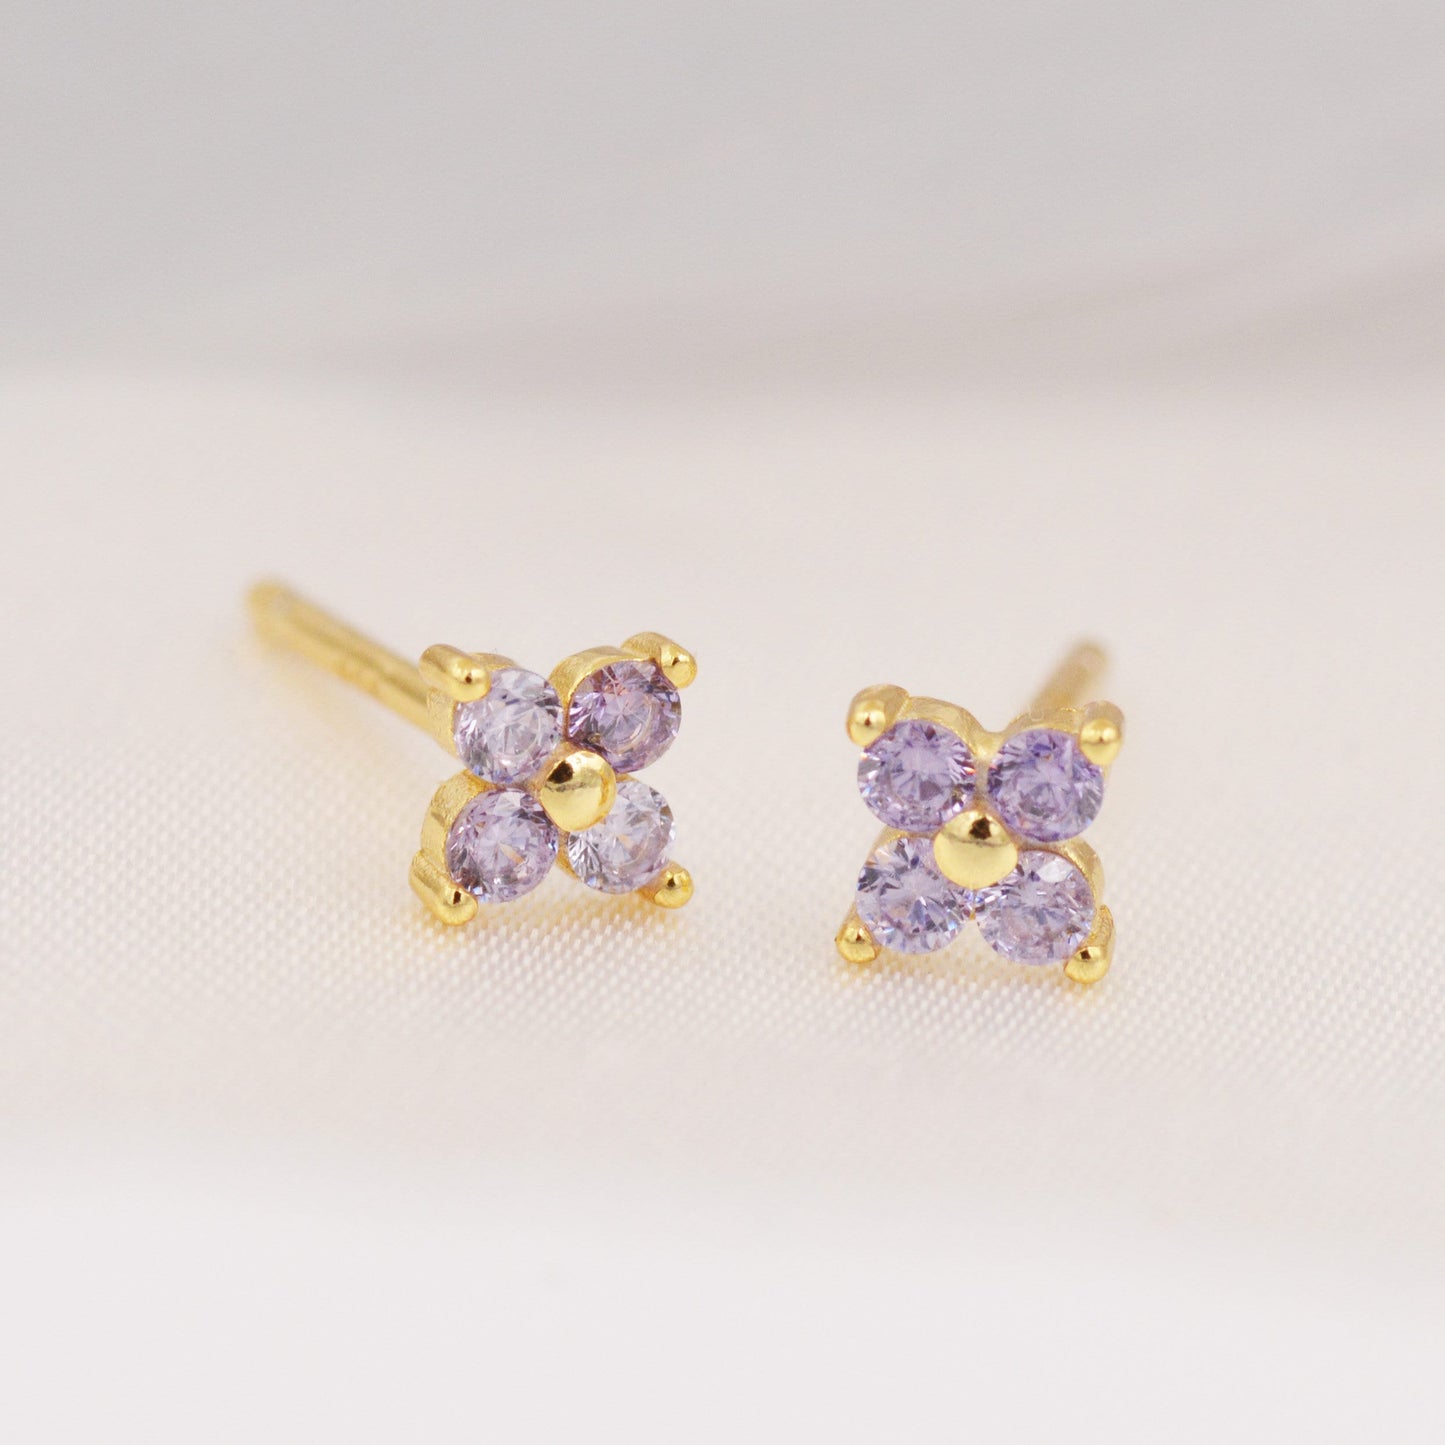 Amethyst Purple CZ Flower Stud Earrings in Sterling Silver, Crystal Flower Earrings, Hydrangea Flower Stud, Four Crystal Stud